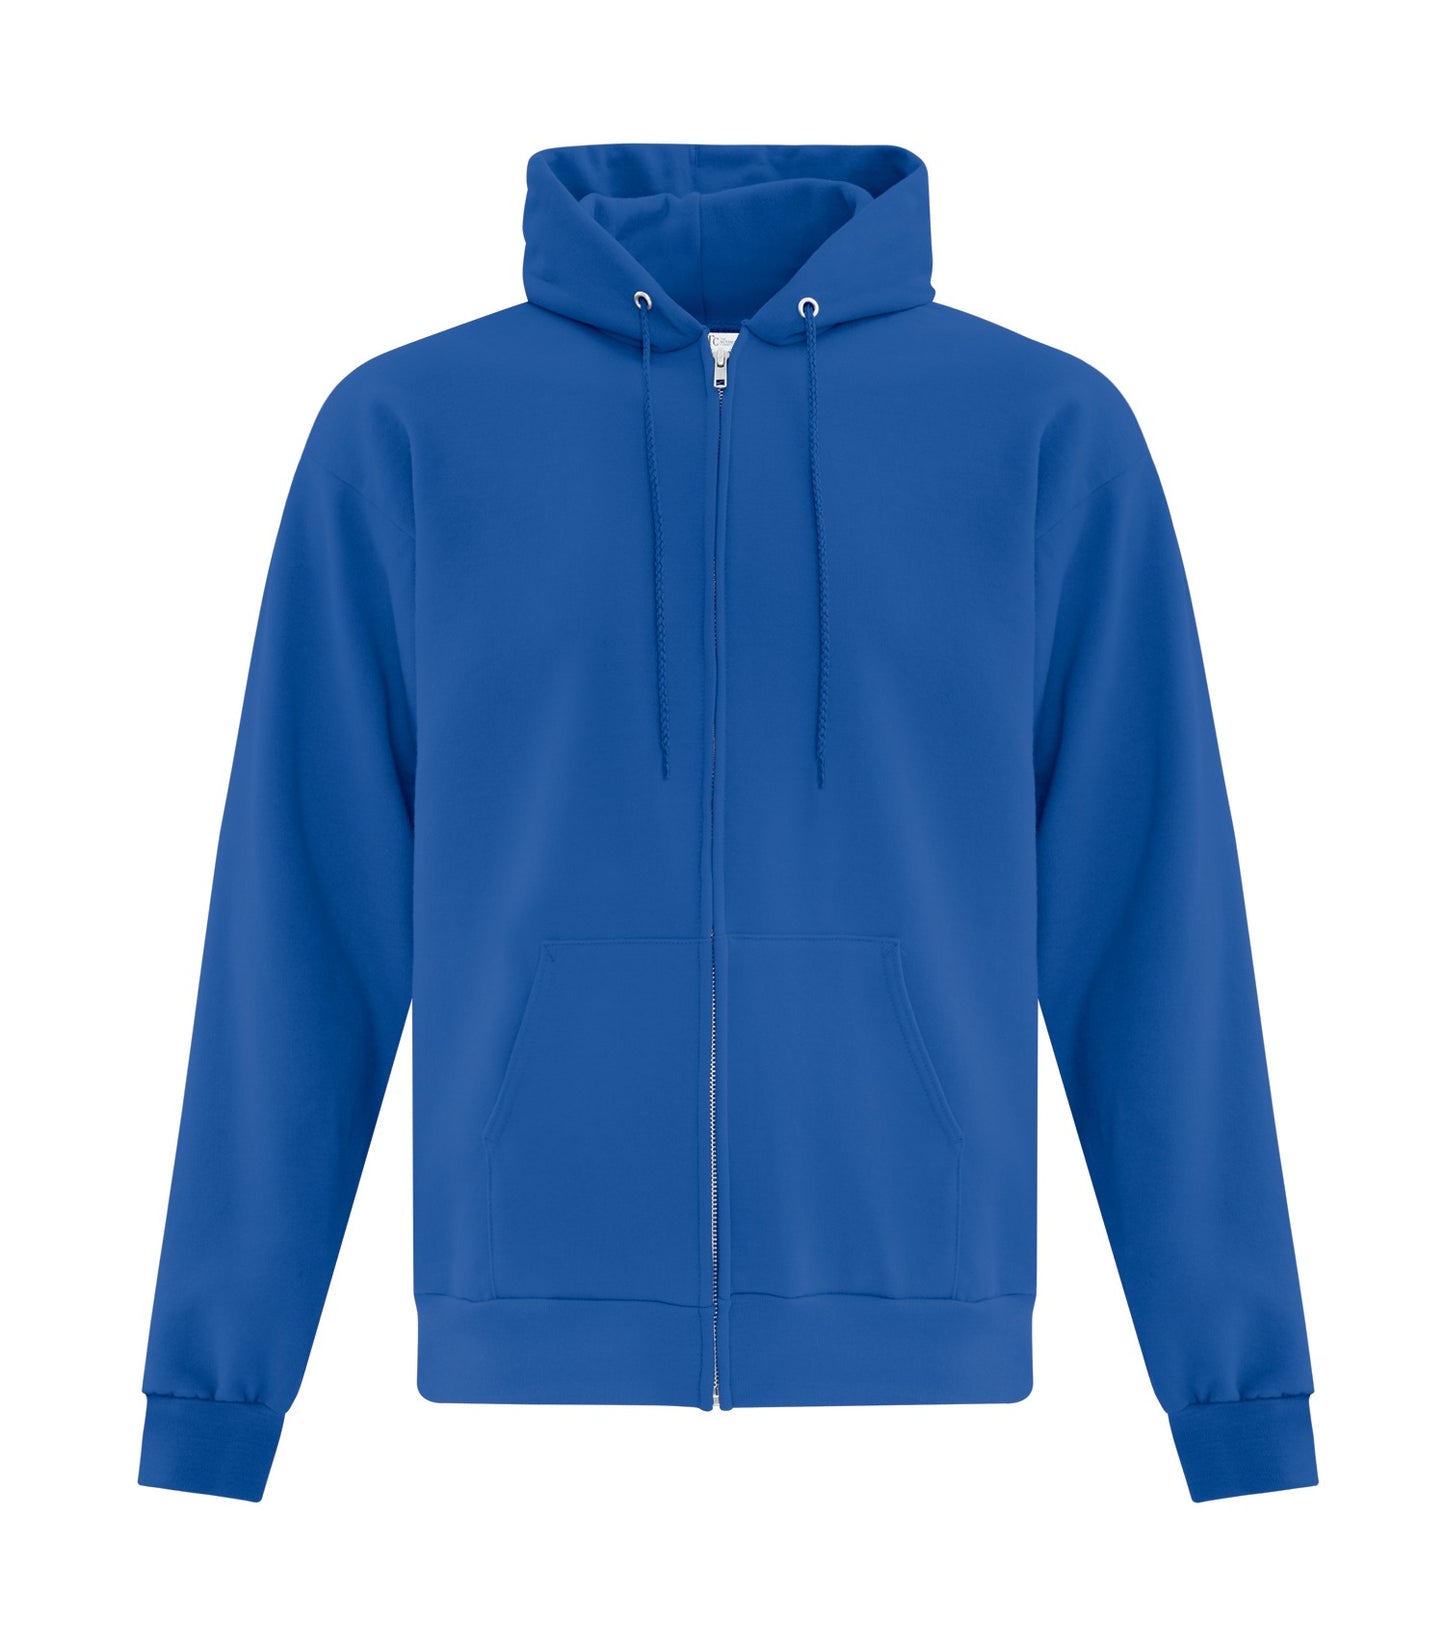 Adult, Full Zip Hooded Sweatshirt. ATCF2600